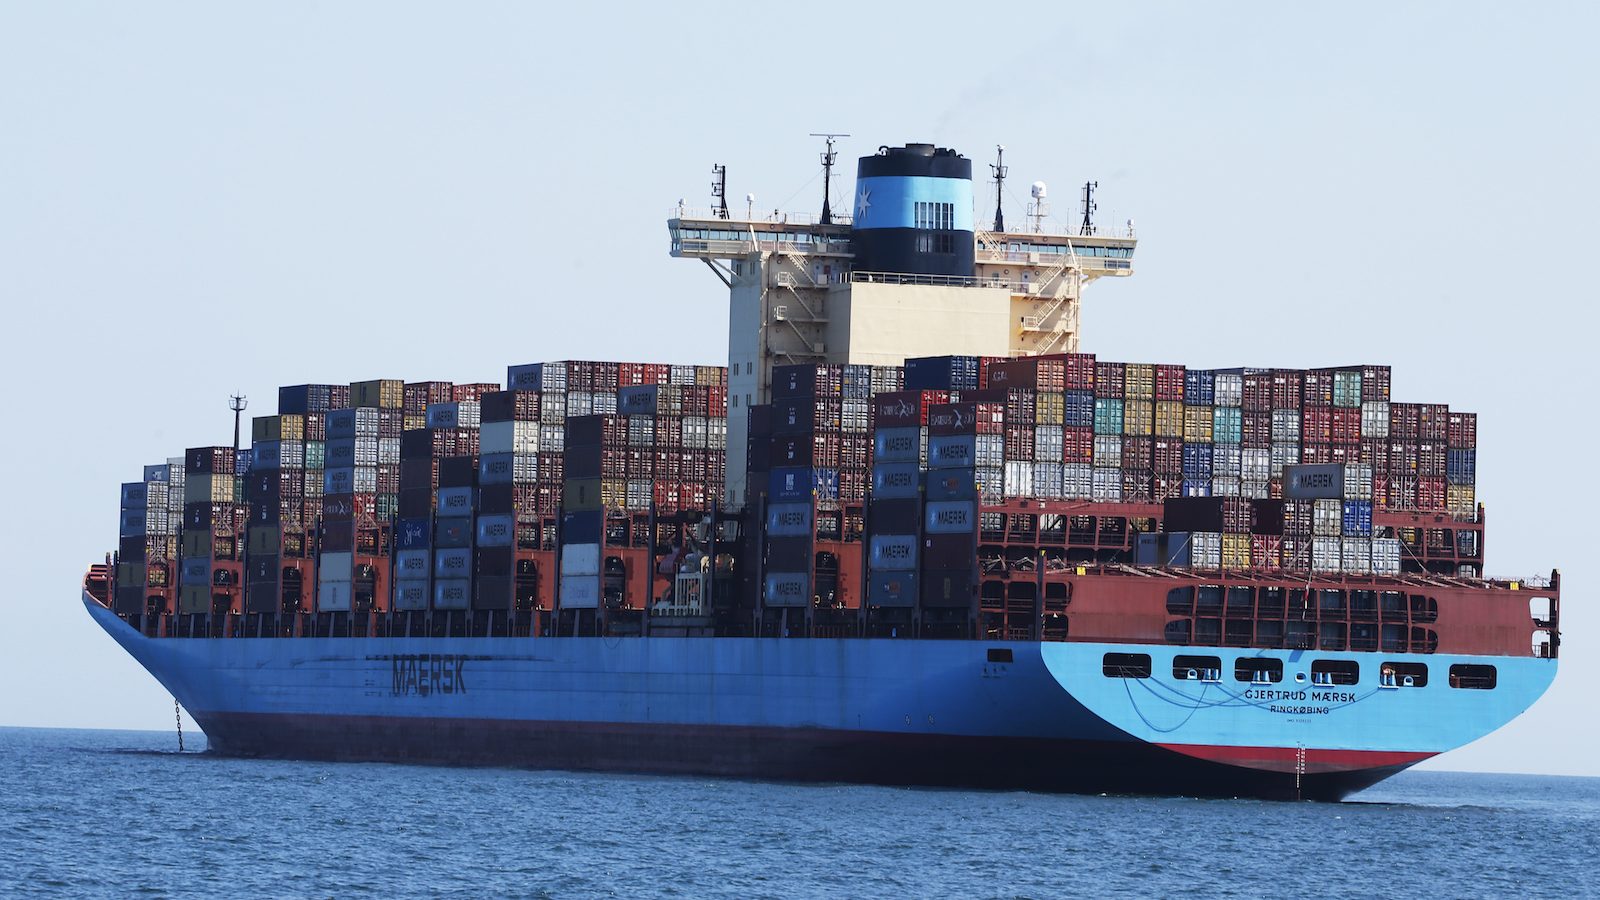 عکس کشتی کانتینر داران Gjertrud Maersk ، در 29 ژوئن 2020 در ساحل ساحل ویرجینیا لنگر انداخته است. کشتی بزرگ آبی با صدها کانتینر حمل و نقل رنگارنگ پوشانده شده است